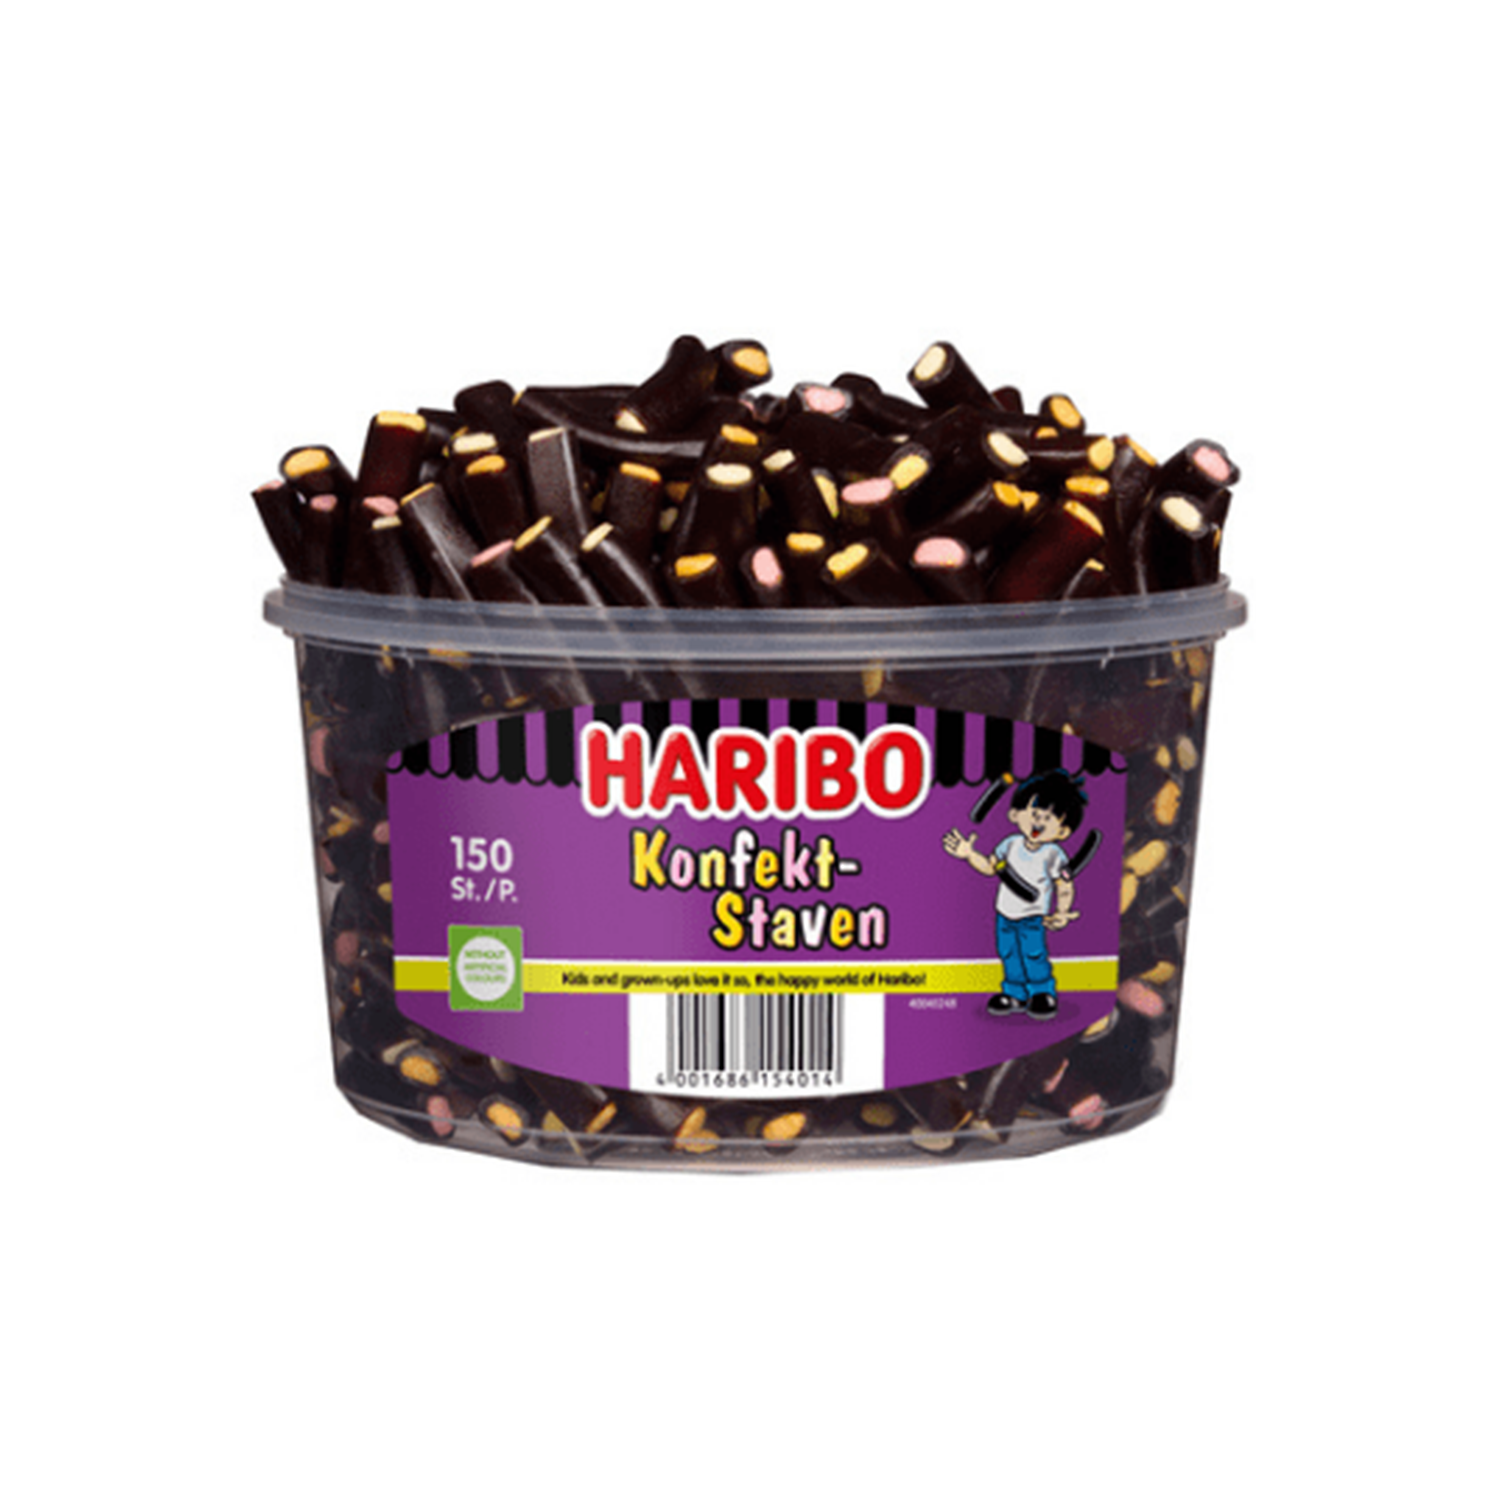 Haribo Konfekt Staven Silo (150 Stuks) - van Haribo - Nu voor maar €11.95 bij Mijn Snoepgoed